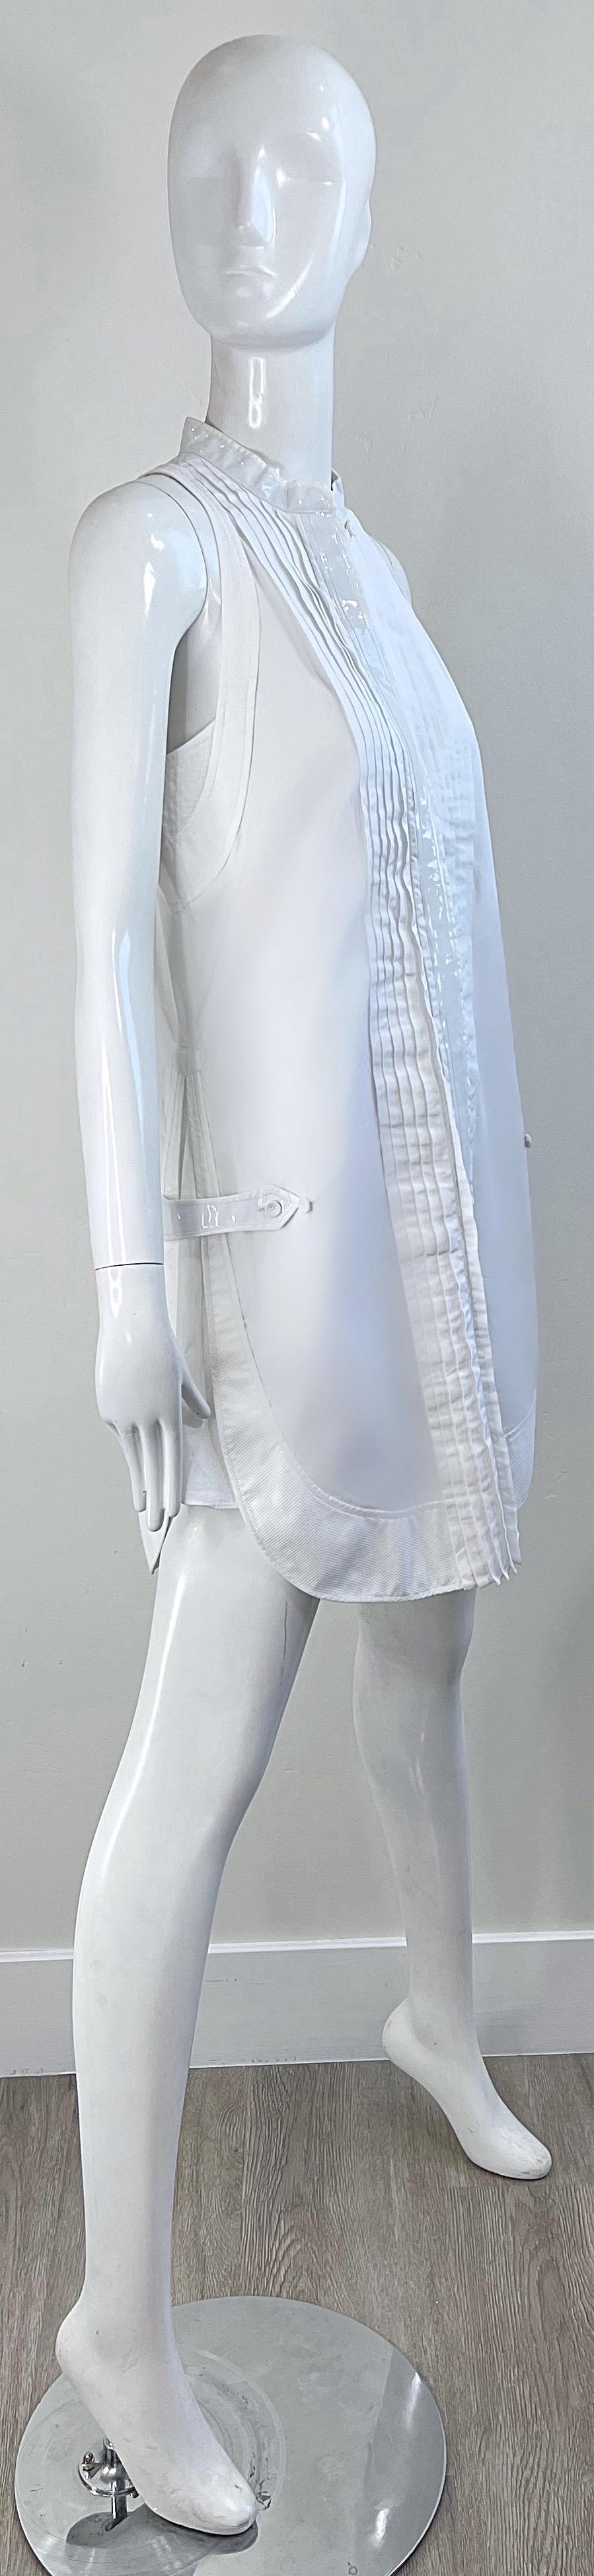 Balenciaga Spring 2007 by Nicolas Ghesquiere Size 38 / 8 White Tuxedo Dress  For Sale 4